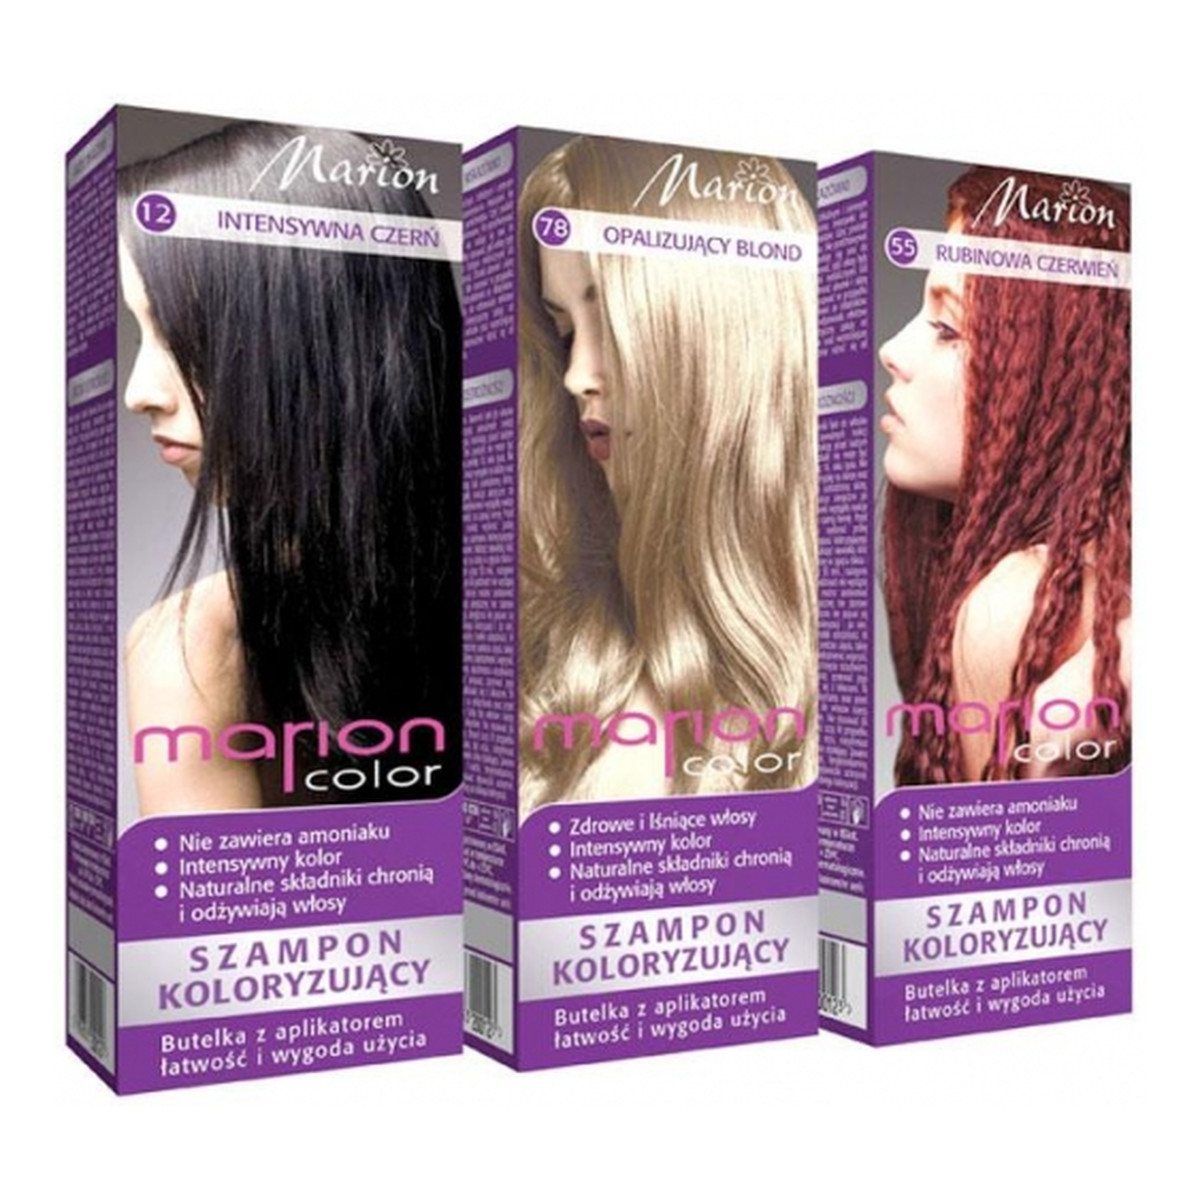 marion color 84 platynowy blond szampon koloryzujący do 24 myć